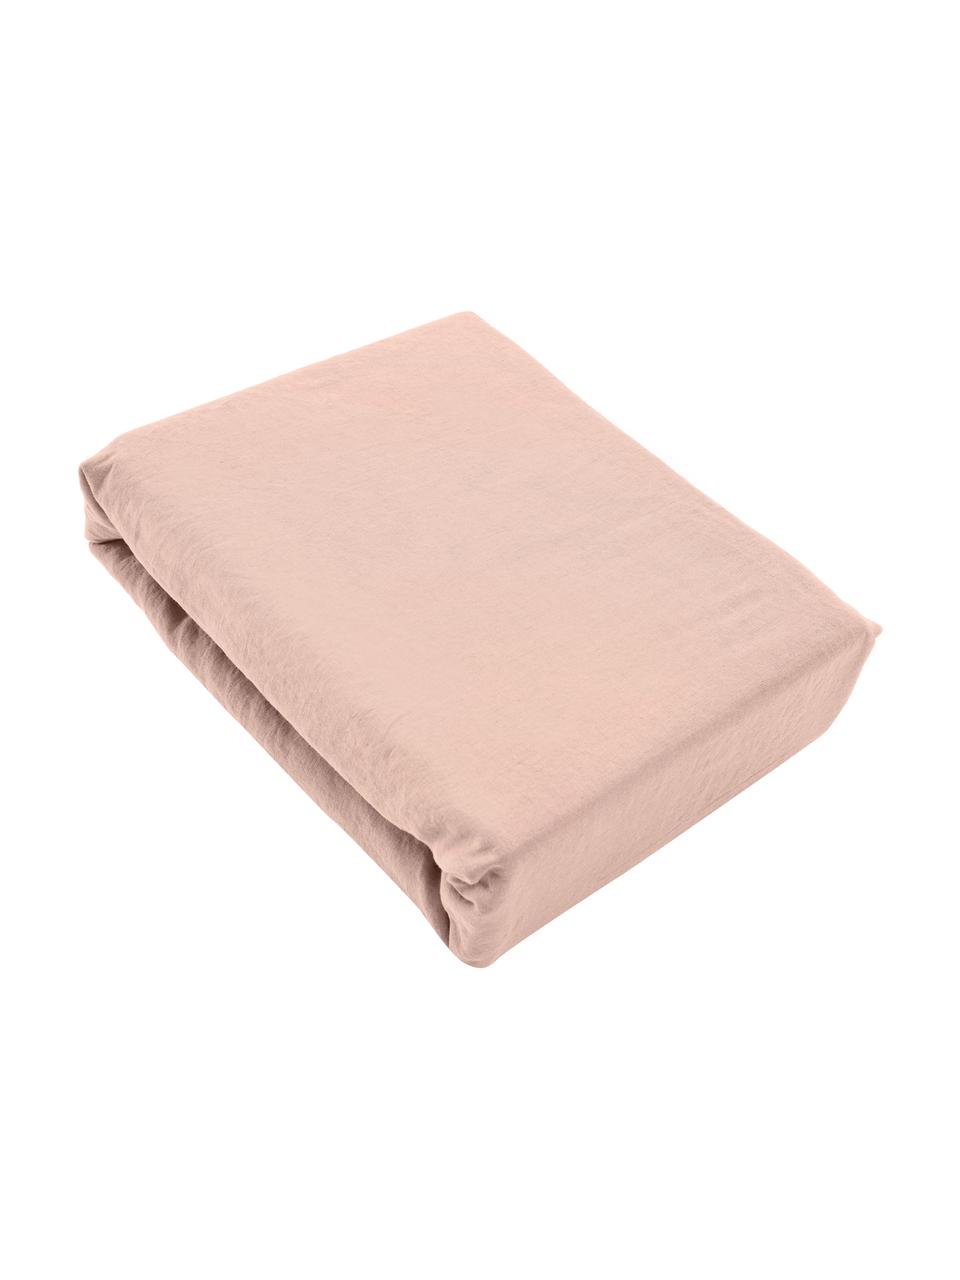 Lenzuolo in lino lavato rosa Natura, Mezzo lino
(52% lino, 48% cotone)

Densità dei fili 108 TC, qualità standard

Il mezzo lino offre una sensazione piacevole e ha un naturale aspetto sgualcito, che viene esaltato dall'effetto stonewash. Assorbe fino al 35% di umidità, si asciuga molto rapidamente e ha un effetto piacevolmente rinfrescante nelle notti d'estate. L'elevata resistenza allo strappo rende il mezzo lino resistente all'abrasione e all'usura, Rosa cipria, Larg. 155 x Lung. 300 cm